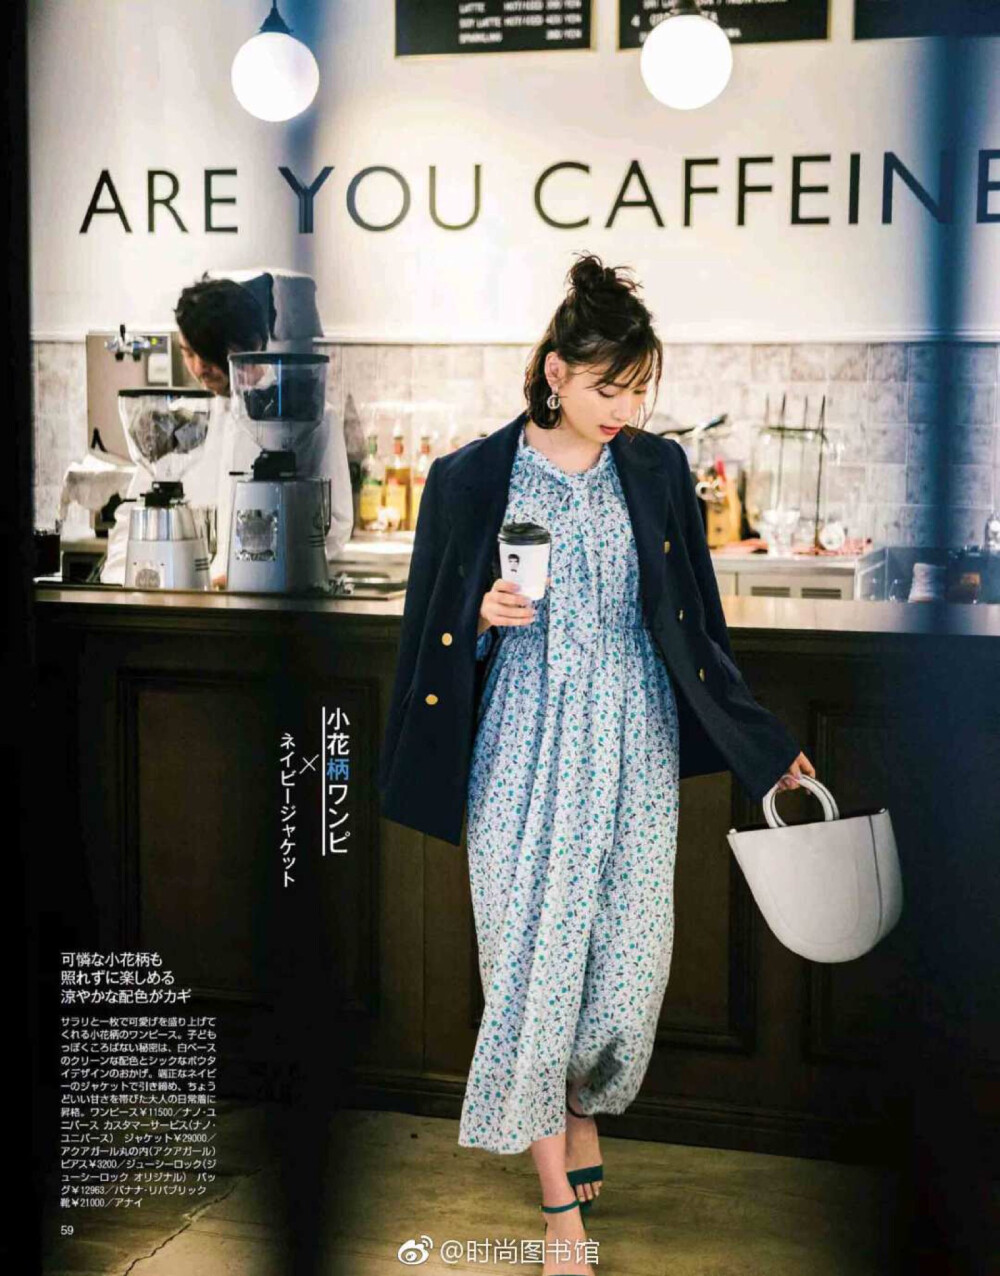 早上起床能快速出门上班的Style大全---之西服夹克搭连衣裙。#日本女子时尚杂志《Baila》#5月刊电子原版高清上架。杂志图源来自时尚图书馆APP ​​​